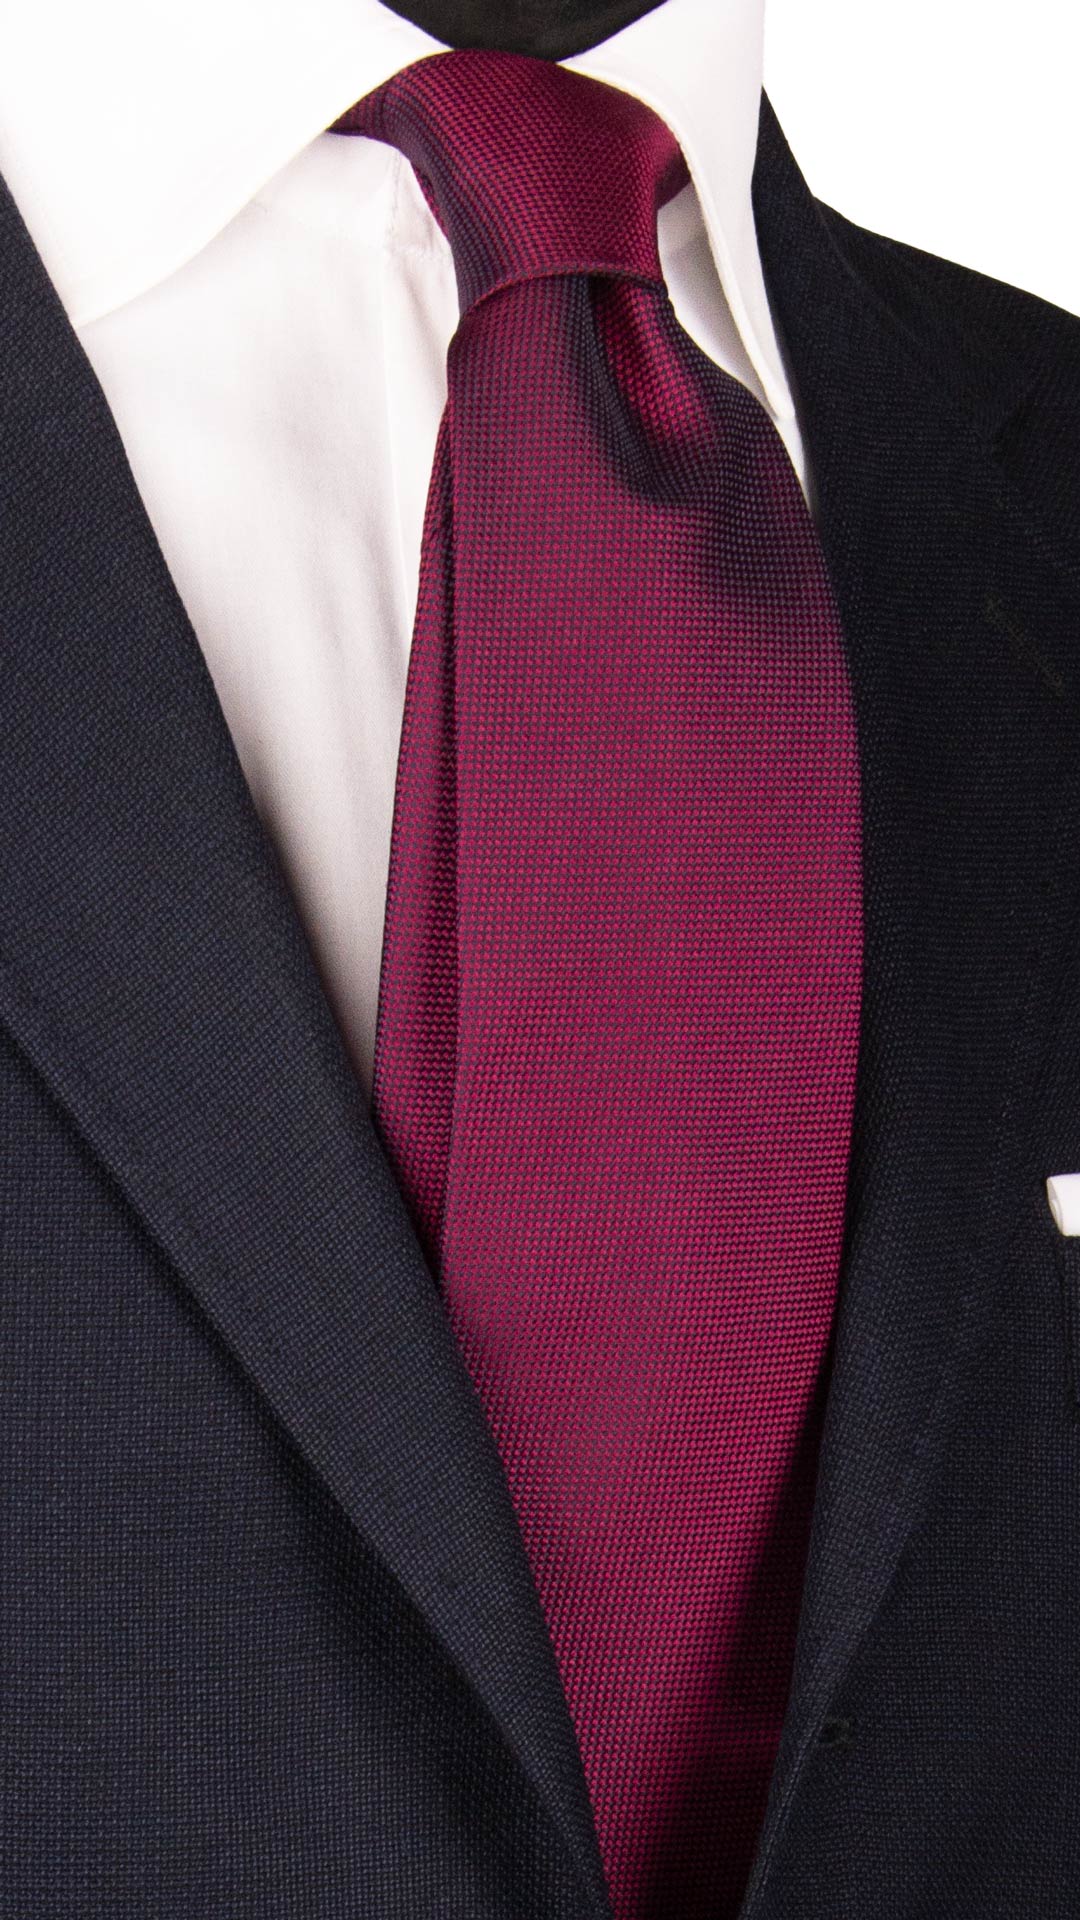 Cravatta di Seta Cololor Vinaccia Tinta Unita 7037 Made in Italy Graffeo Cravatte